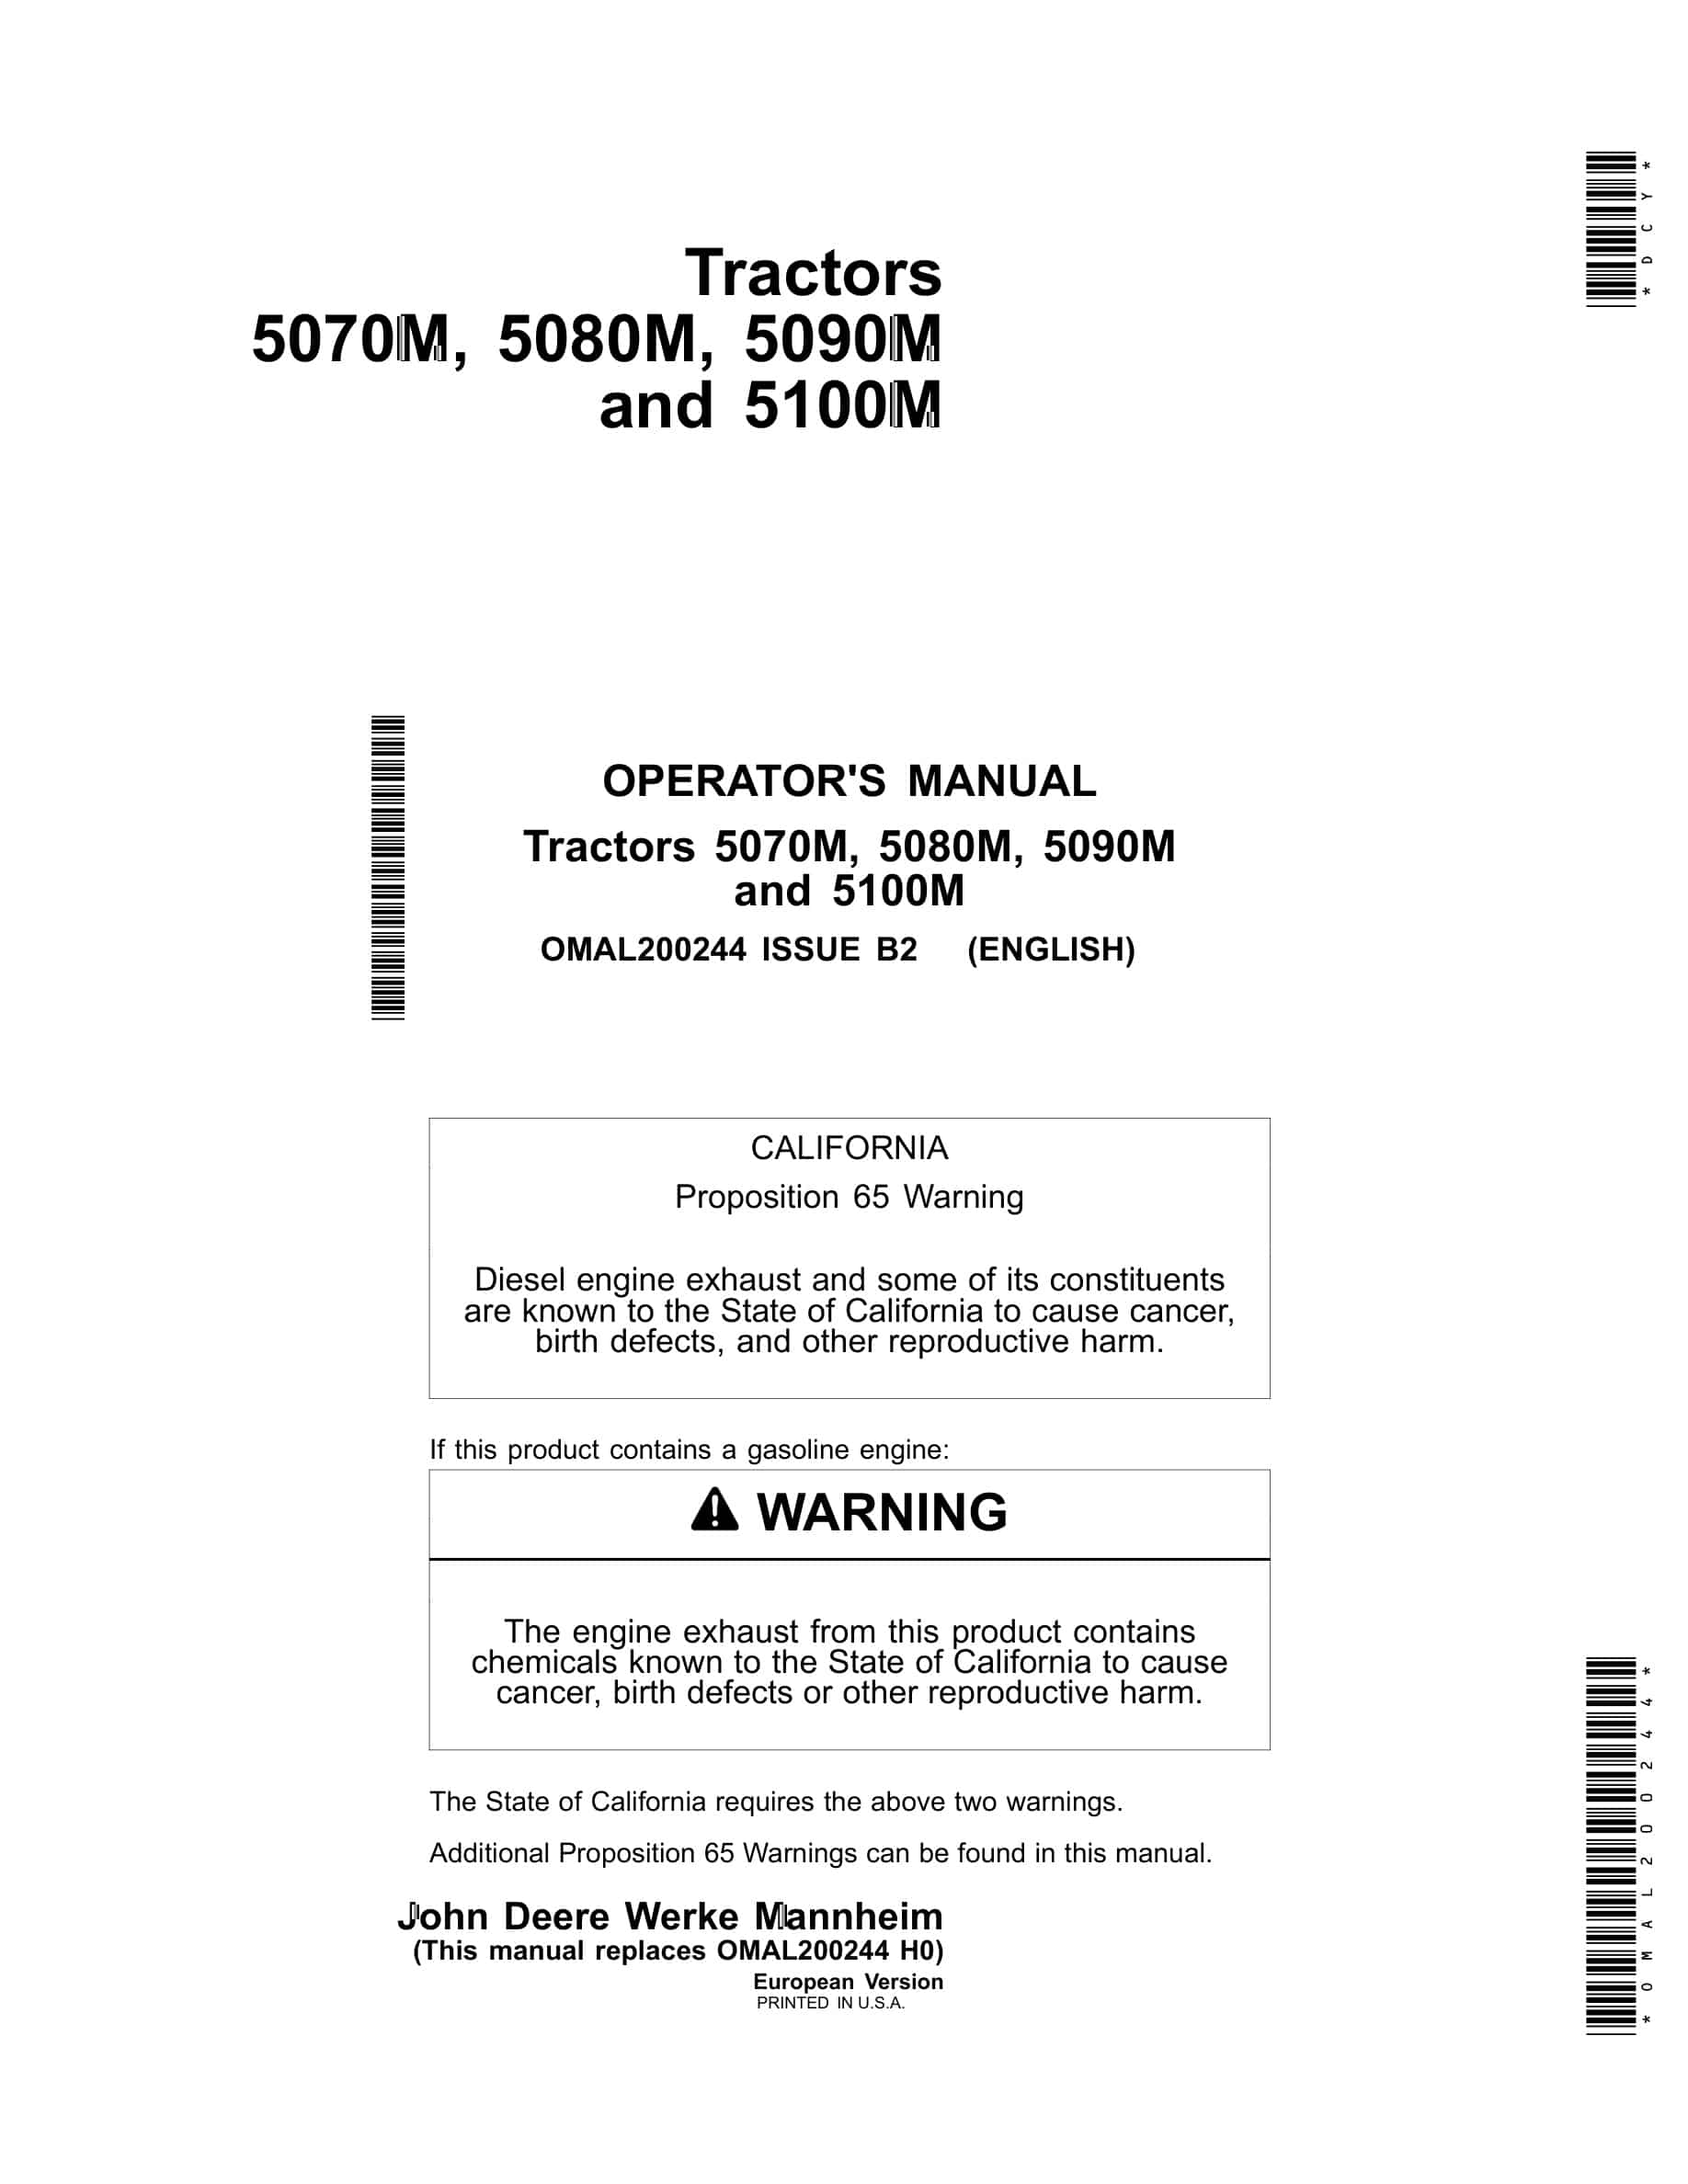 John Deere 5070m, 5080m, 5090m 5100m Tractors Operator Manuals OMAL200244-1